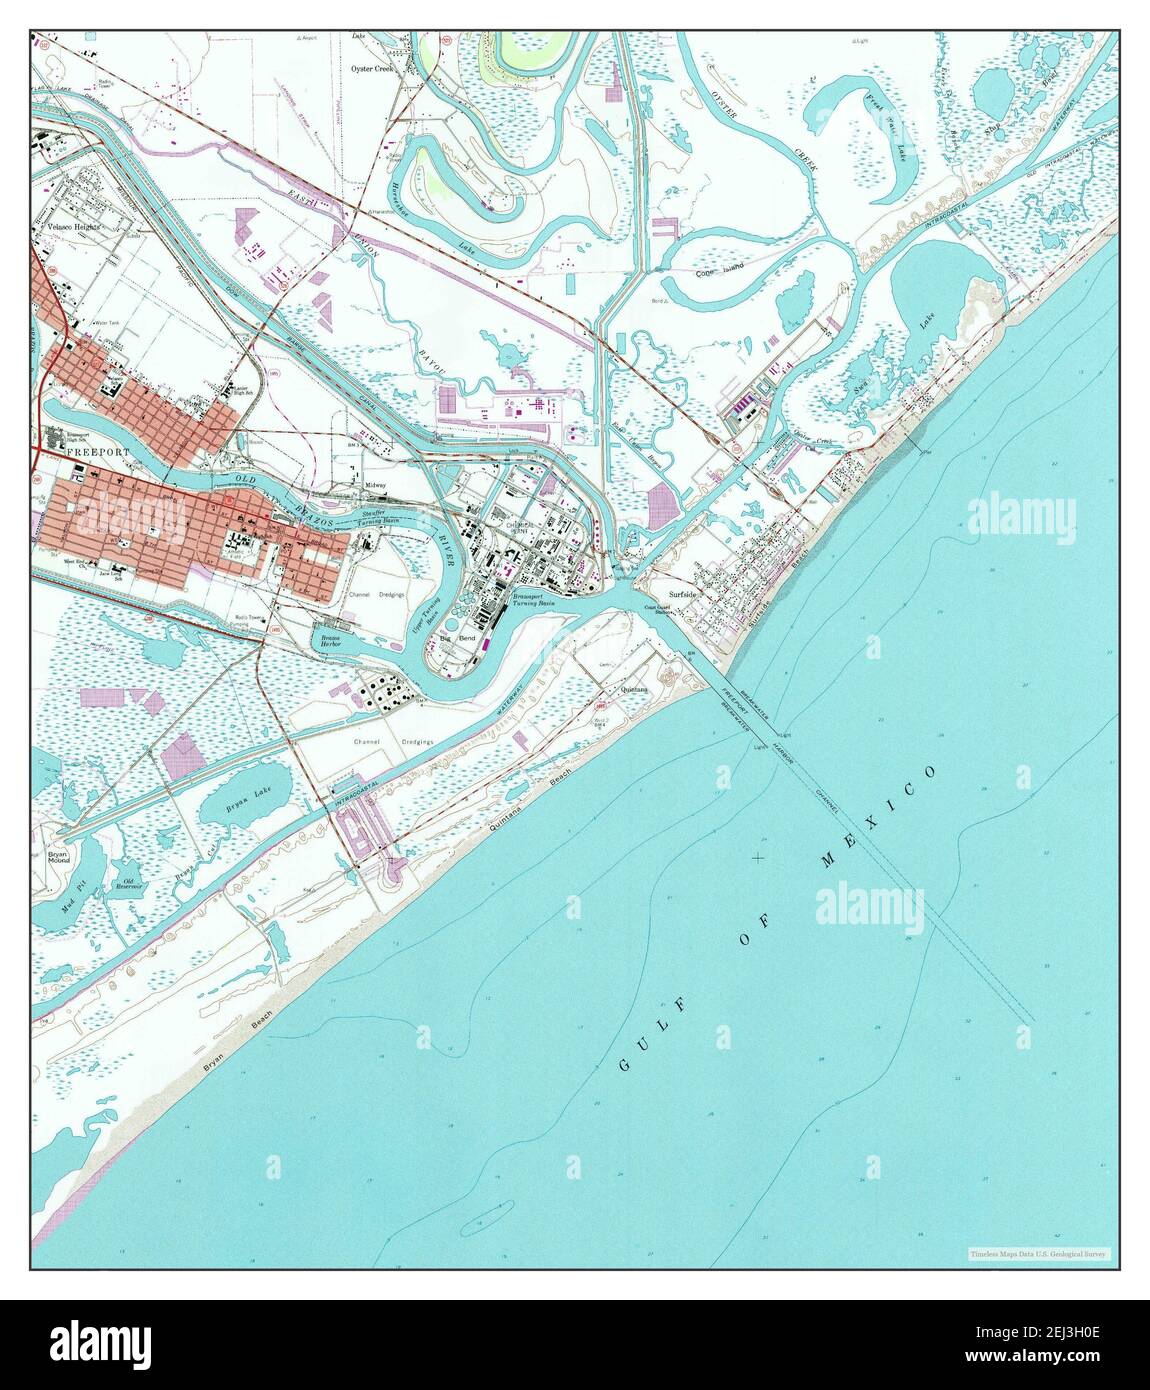 Freeport Texas Map 1964 1 24000 Estados Unidos De America Por Timeless Maps Data U S Geological Survey 2ej3h0e 